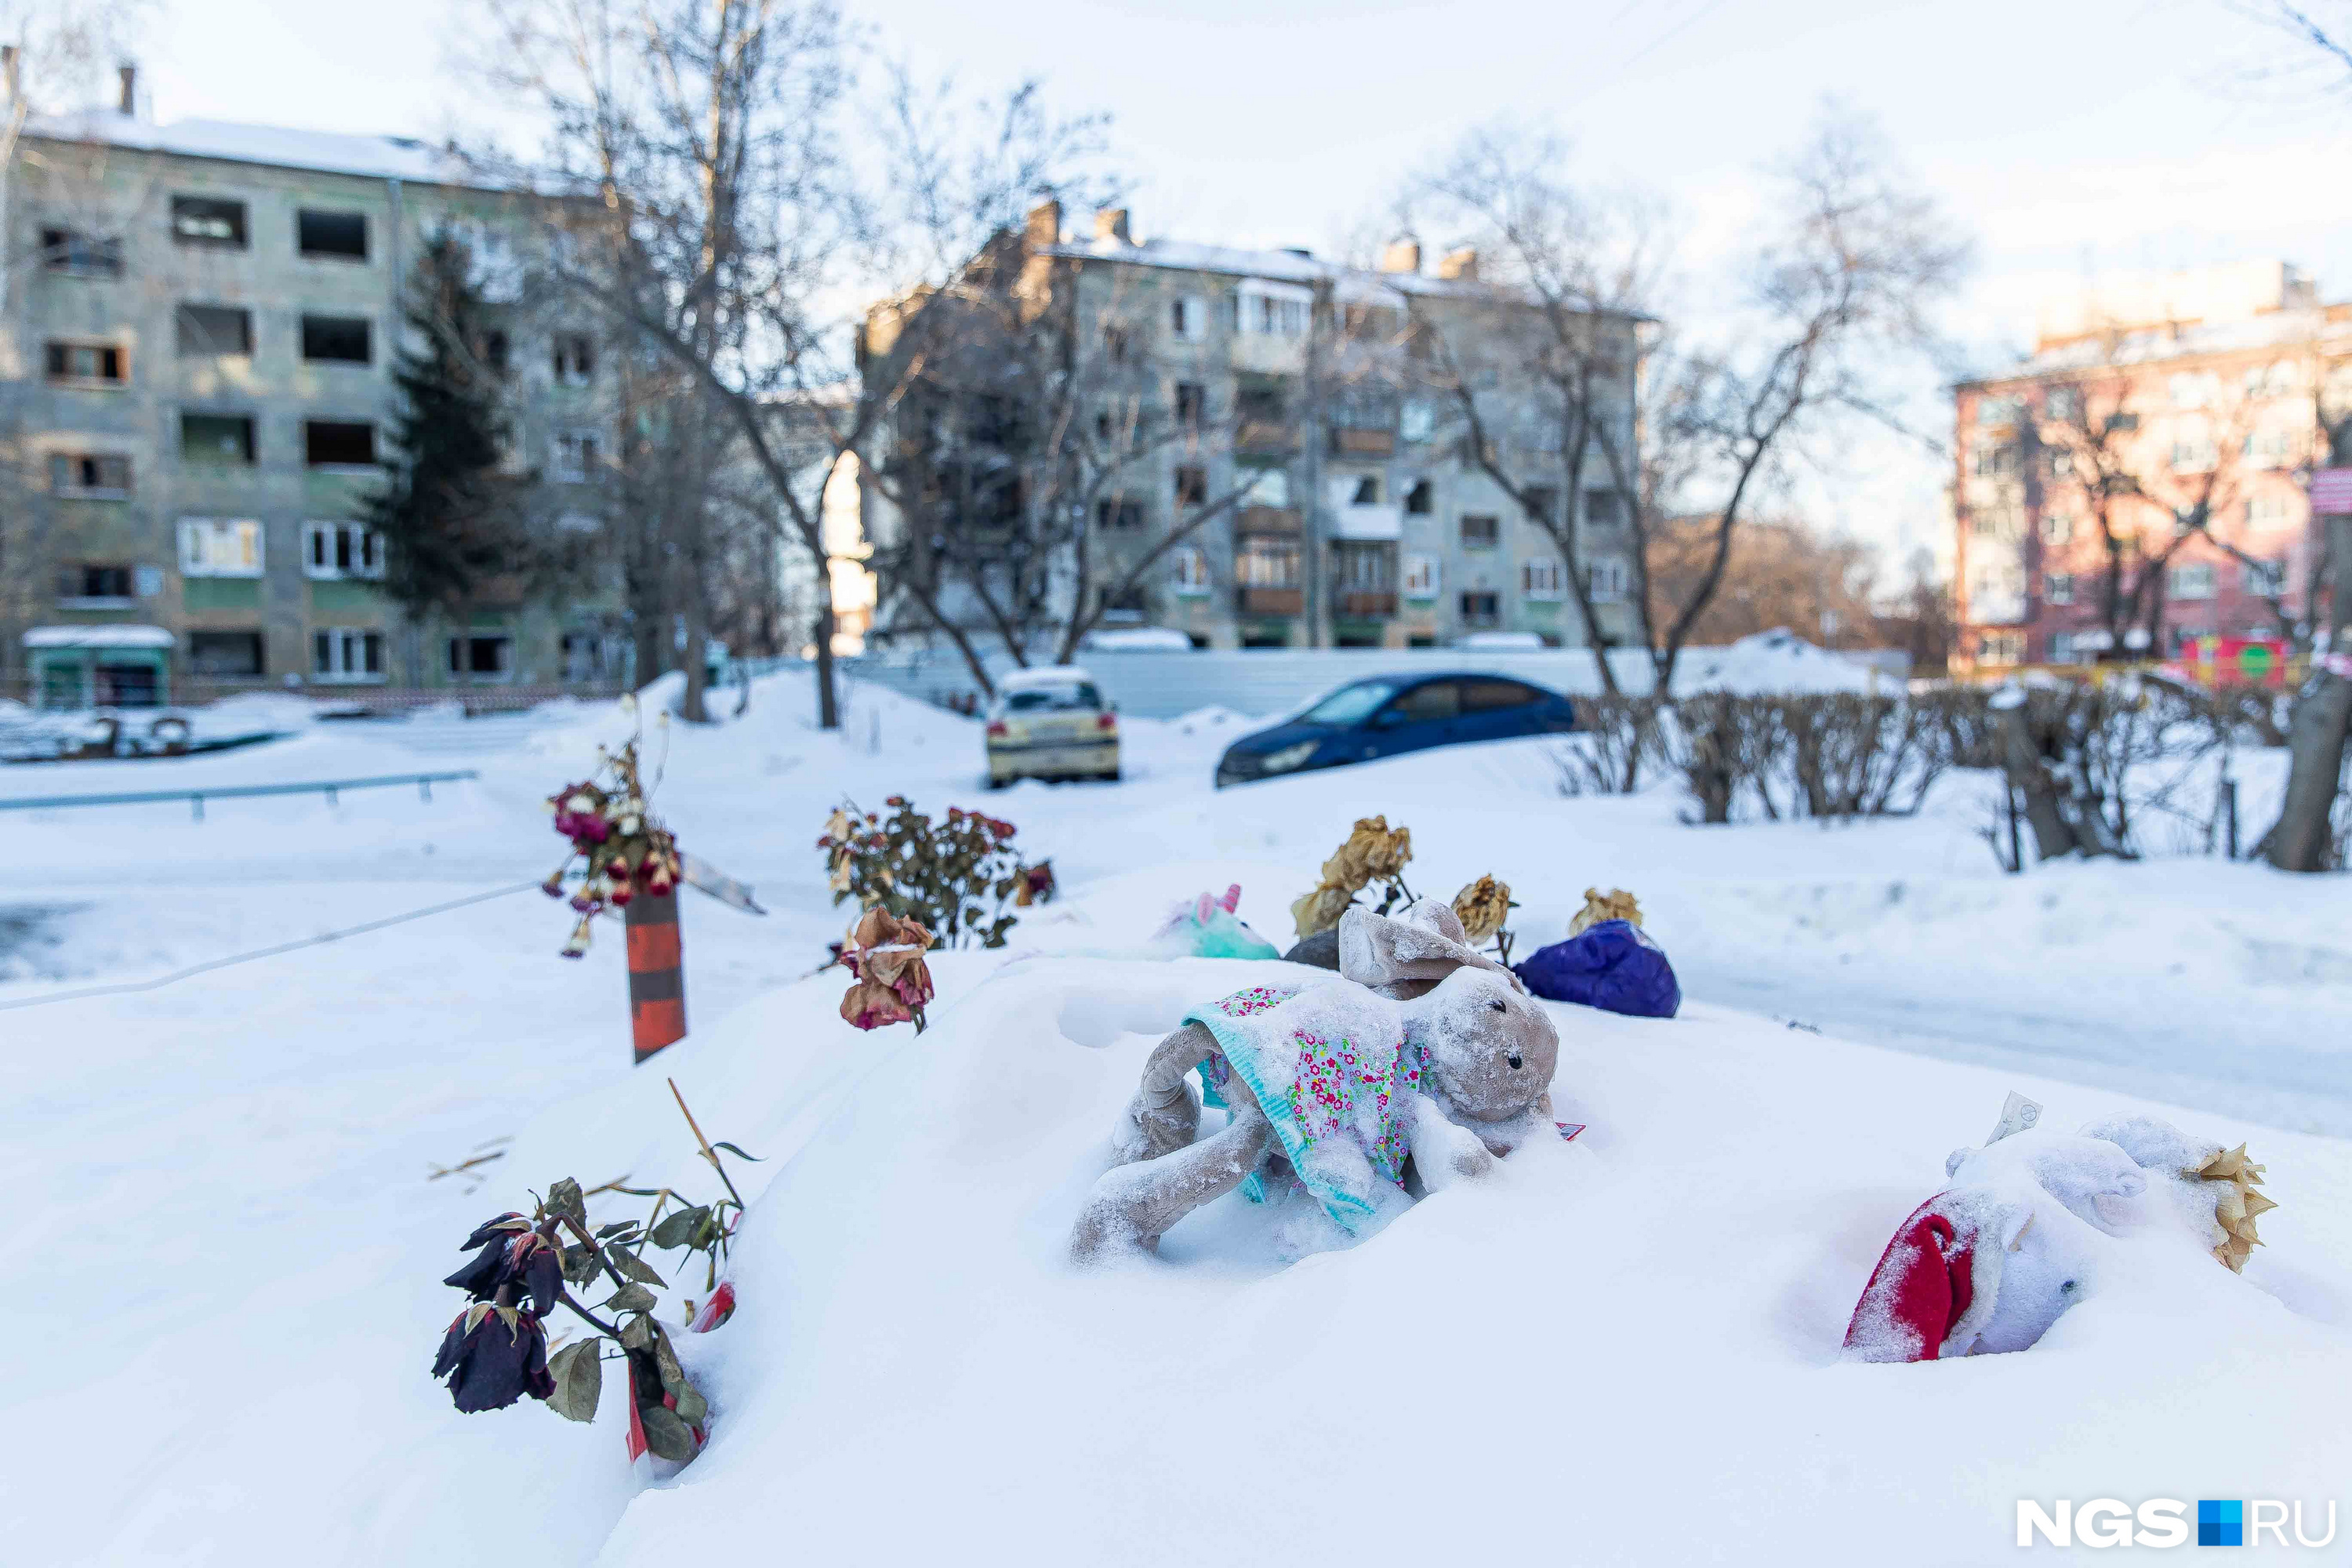 Среди погибших от взрыва <a href="https://ngs.ru/text/incidents/2023/02/10/72048383/" class="_" target="_blank">были дети</a>. Сразу после трагедии около дома появился стихийный мемориал — туда люди приносили игрушки и цветы. Сейчас их занесло снегом